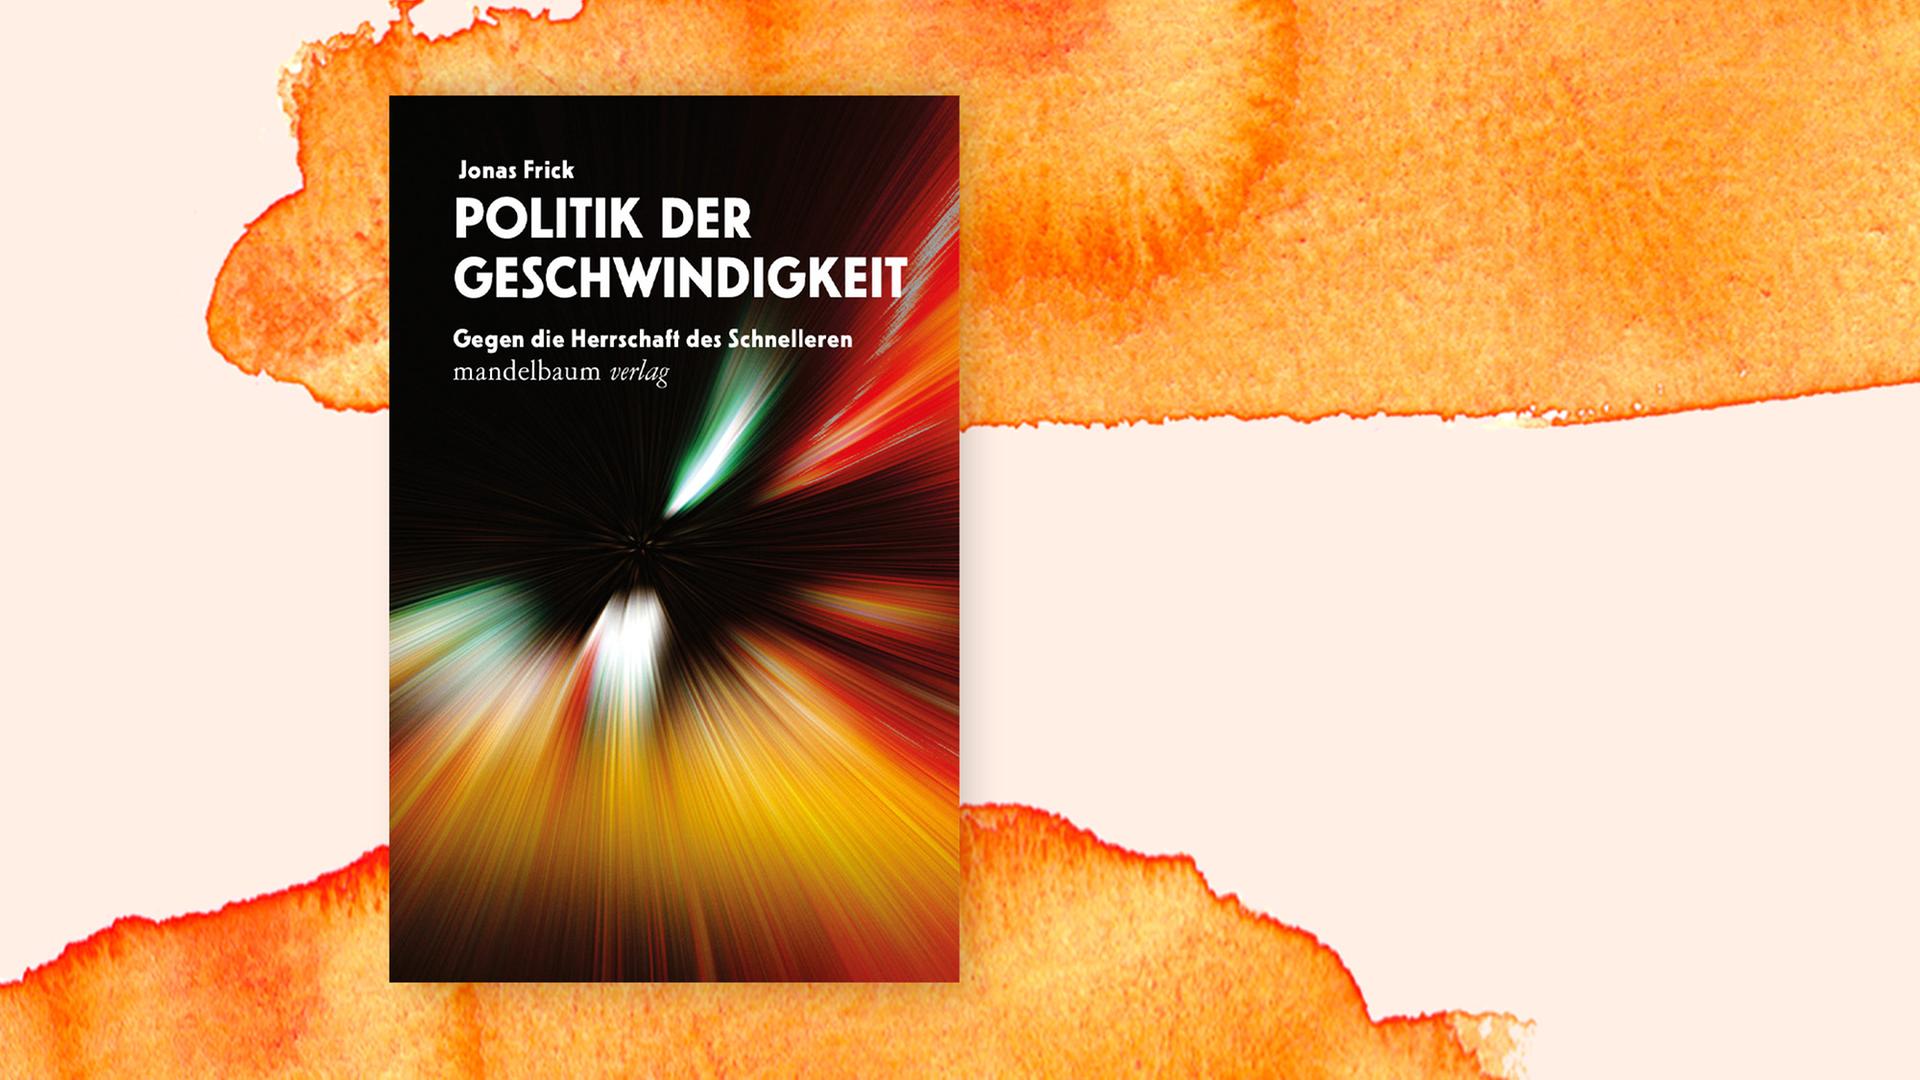 Buchcover "Die Politik der Geschwindigkeit" von Jonas Frick.